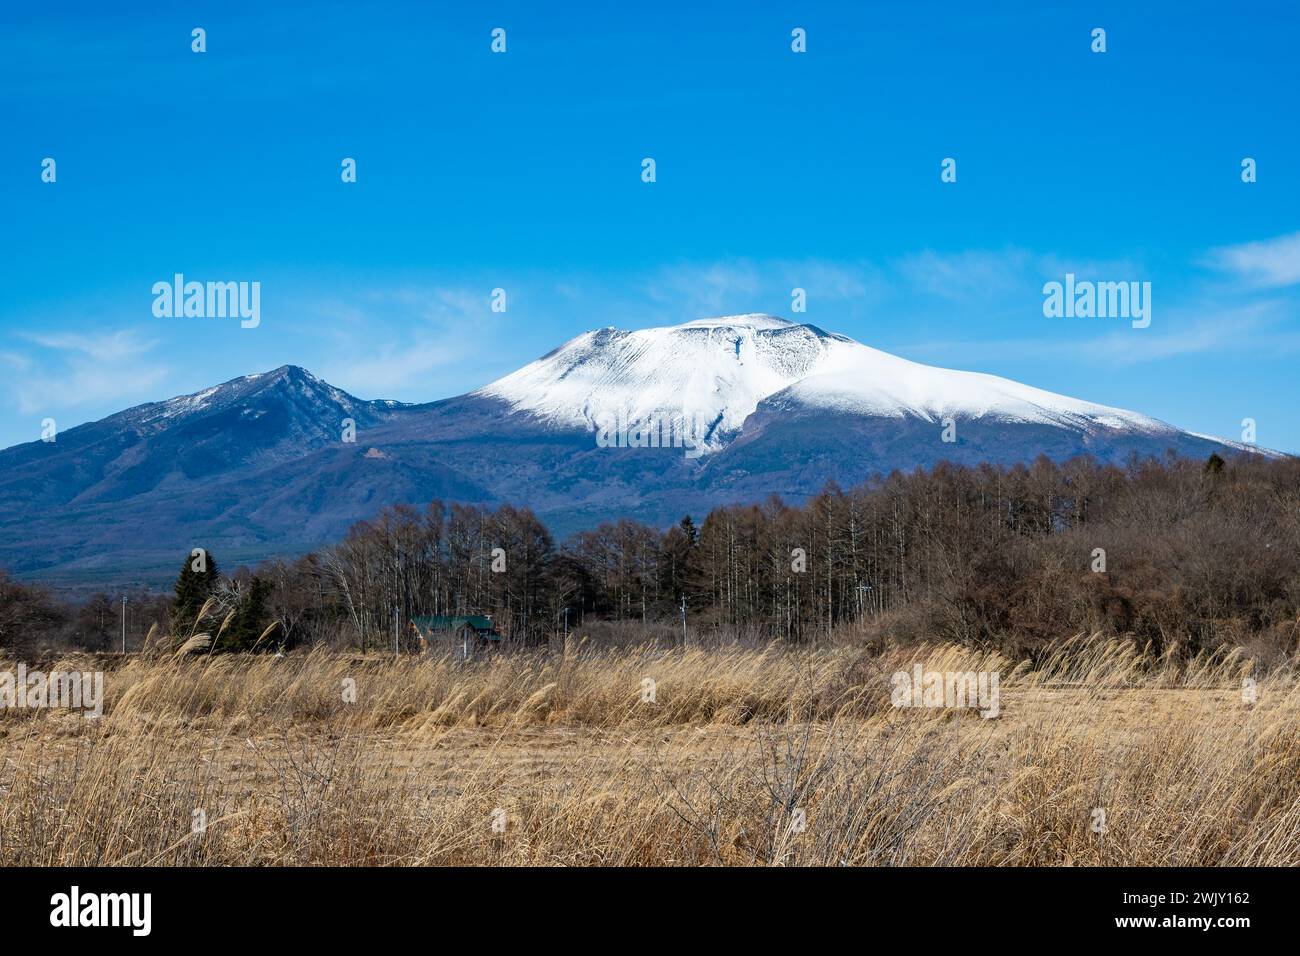 Snow capped Mount Asama (浅間山, Asama-yama), an active volcano in central Honshū. Karuizawa, Nagano, Japan. Stock Photo